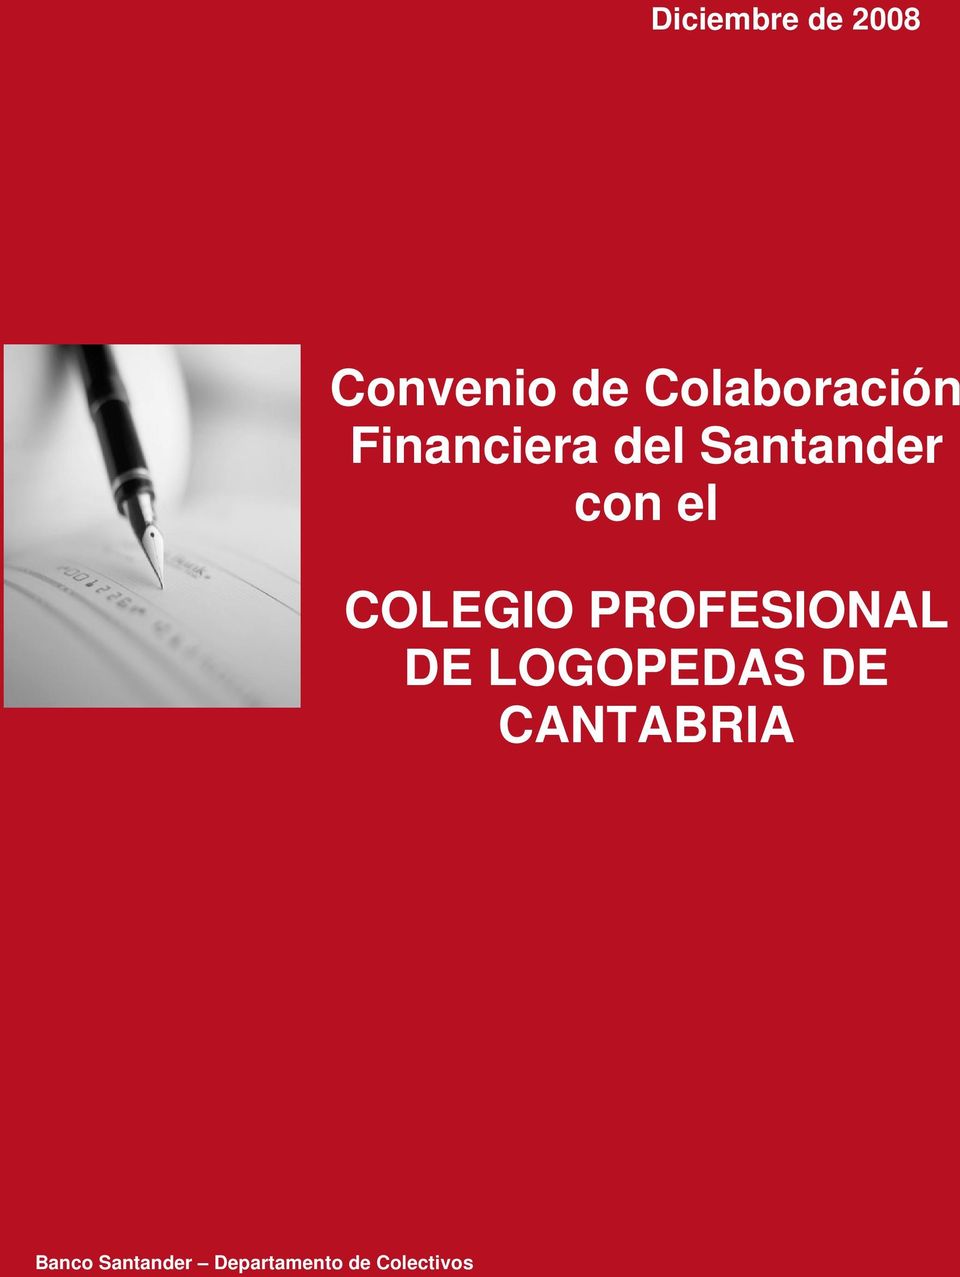 PROFESIONAL DE LOGOPEDAS DE CANTABRIA Banco Banco